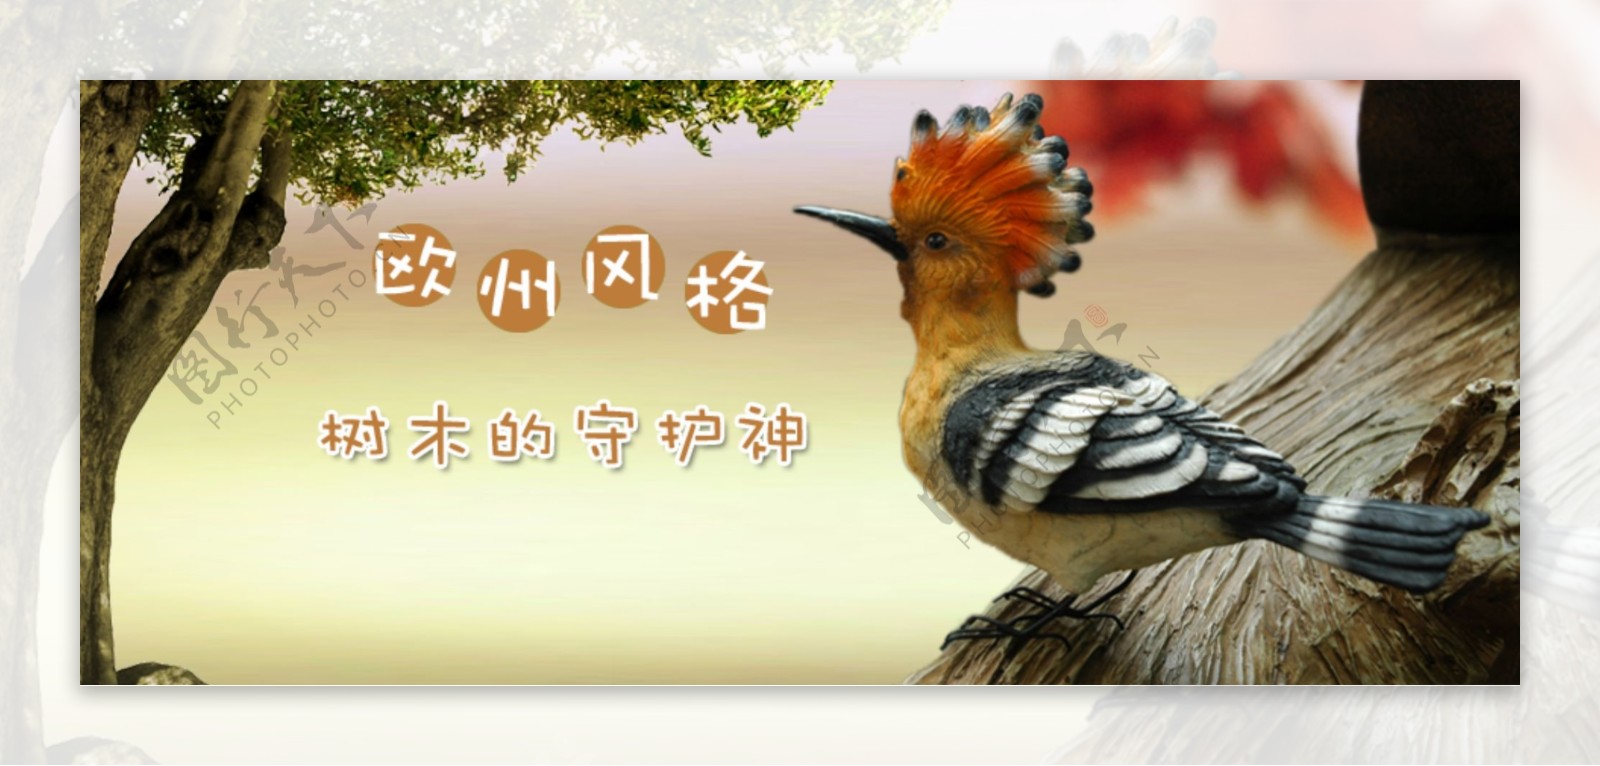 淘宝啄木鸟活动广告图片